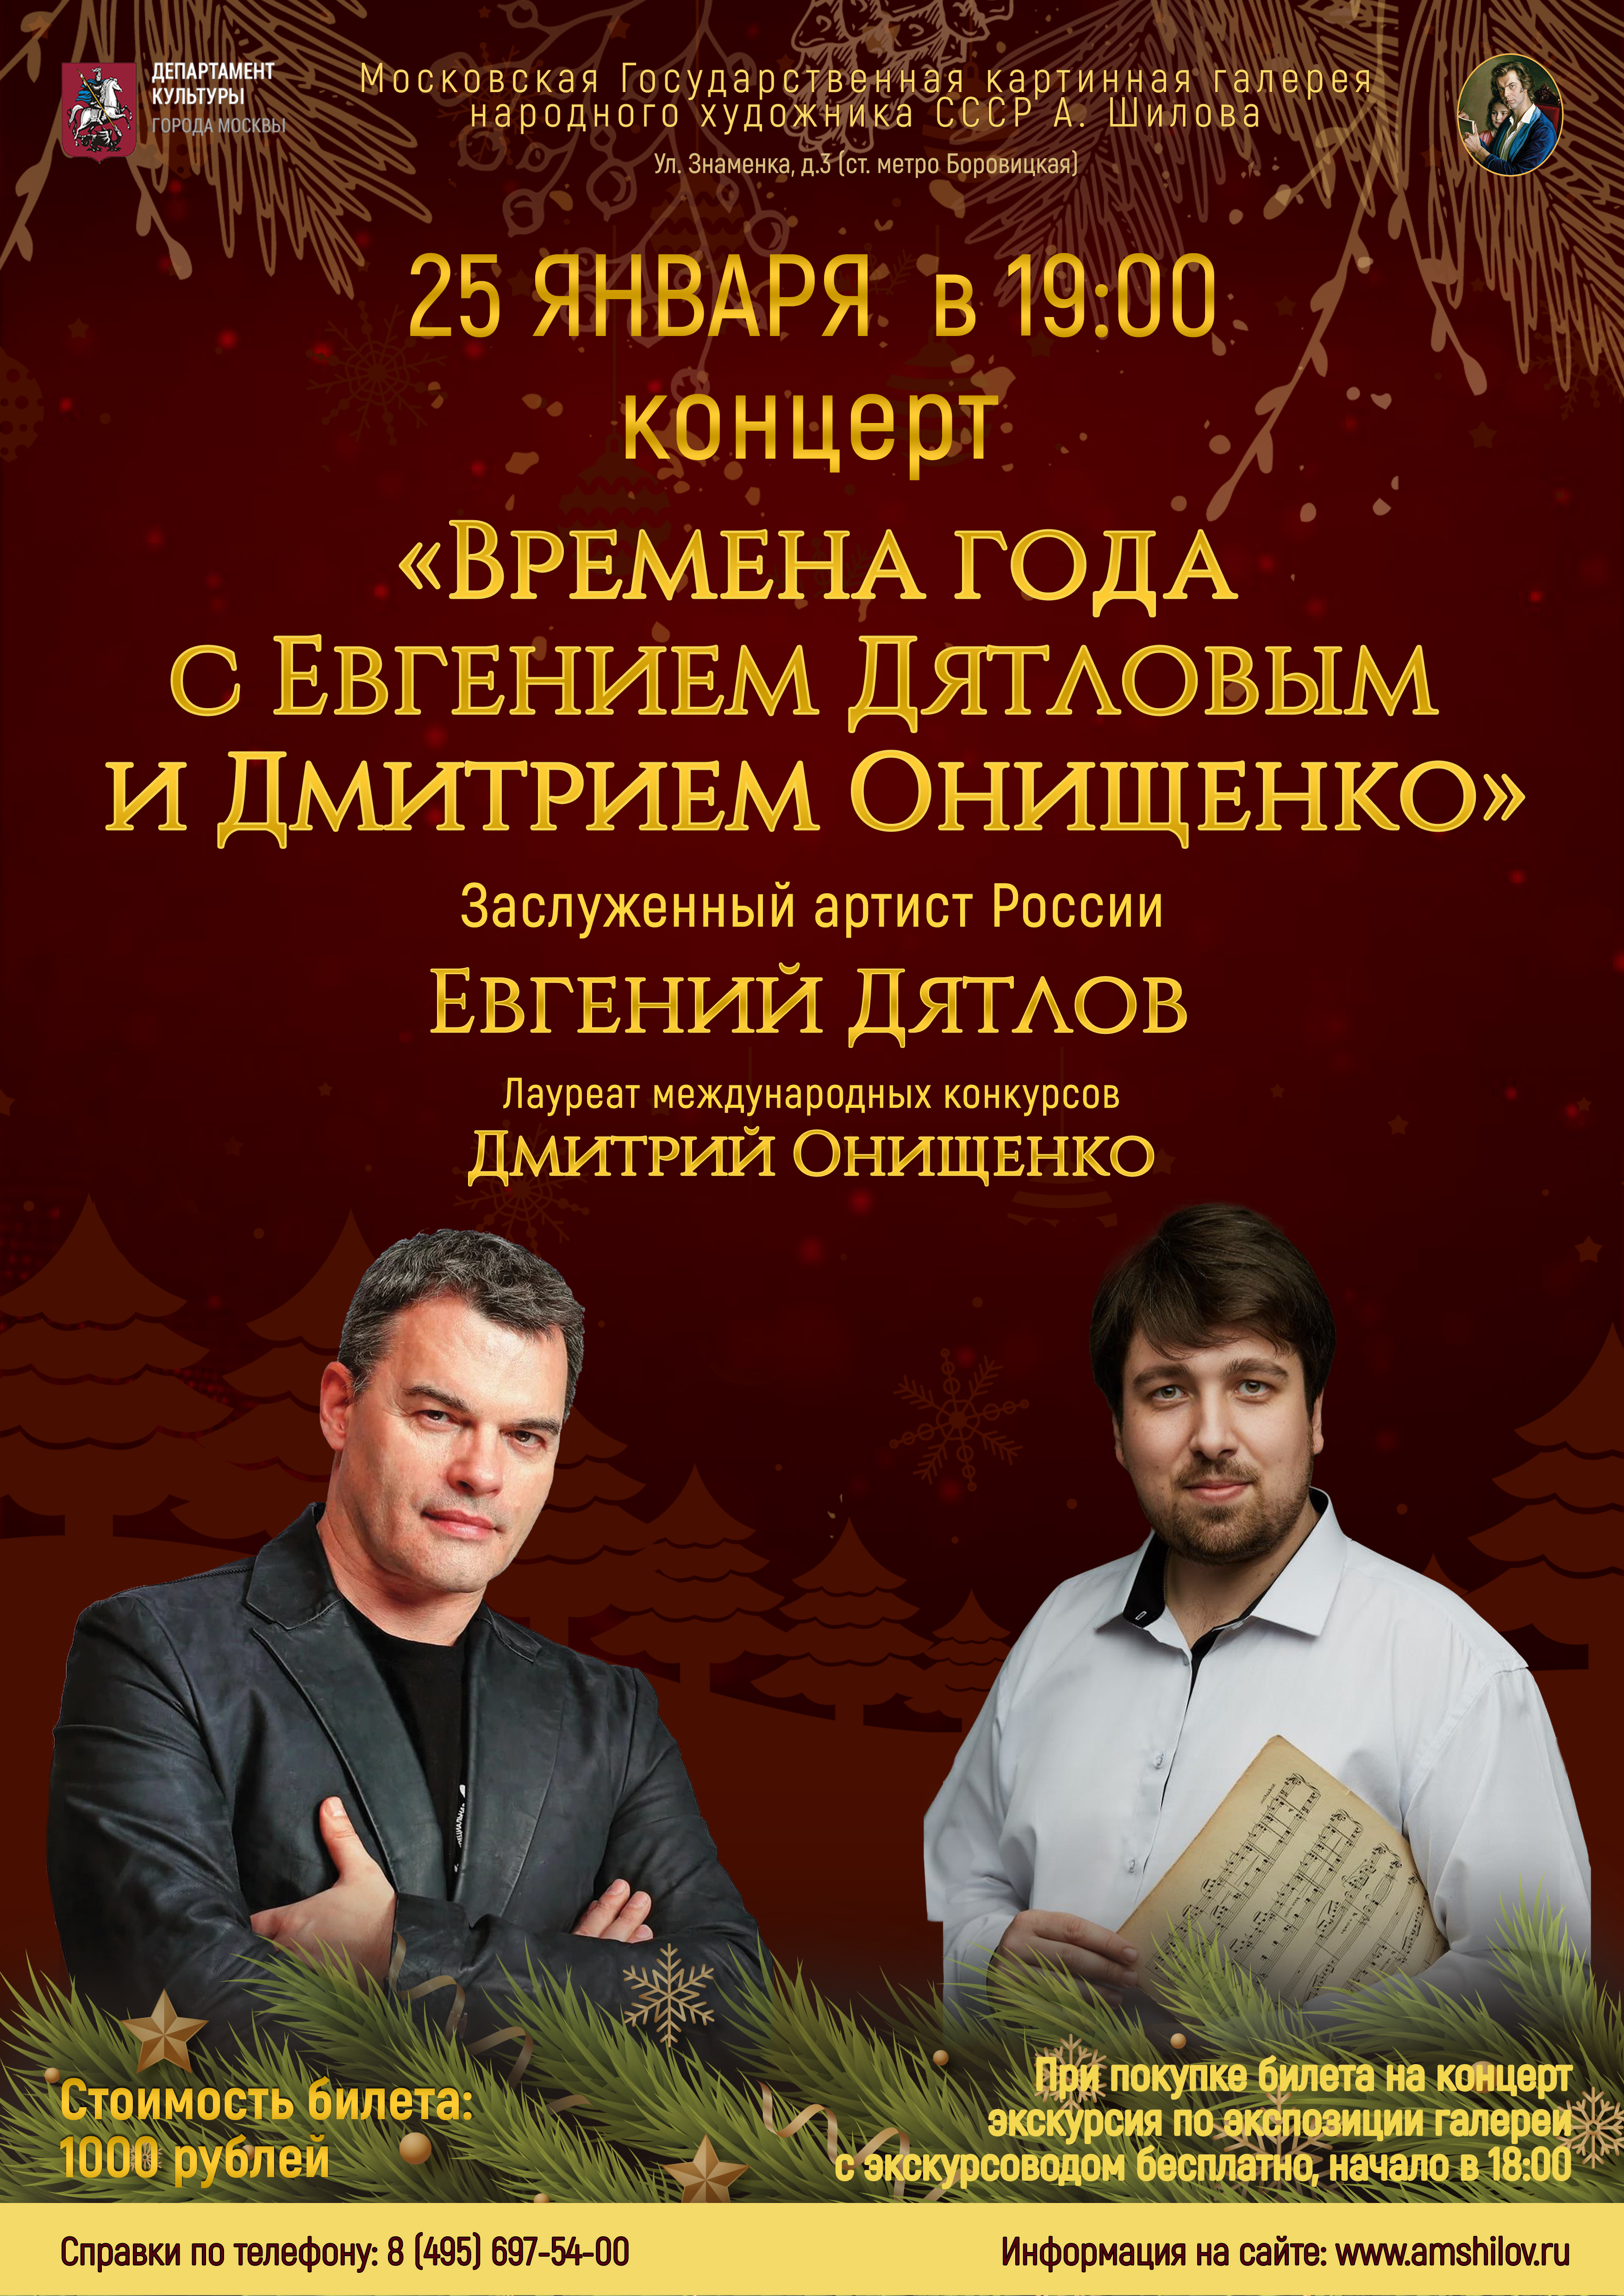  Концерт  «Времена года с Евгением Дятловым и Дмитрием Онищенко»